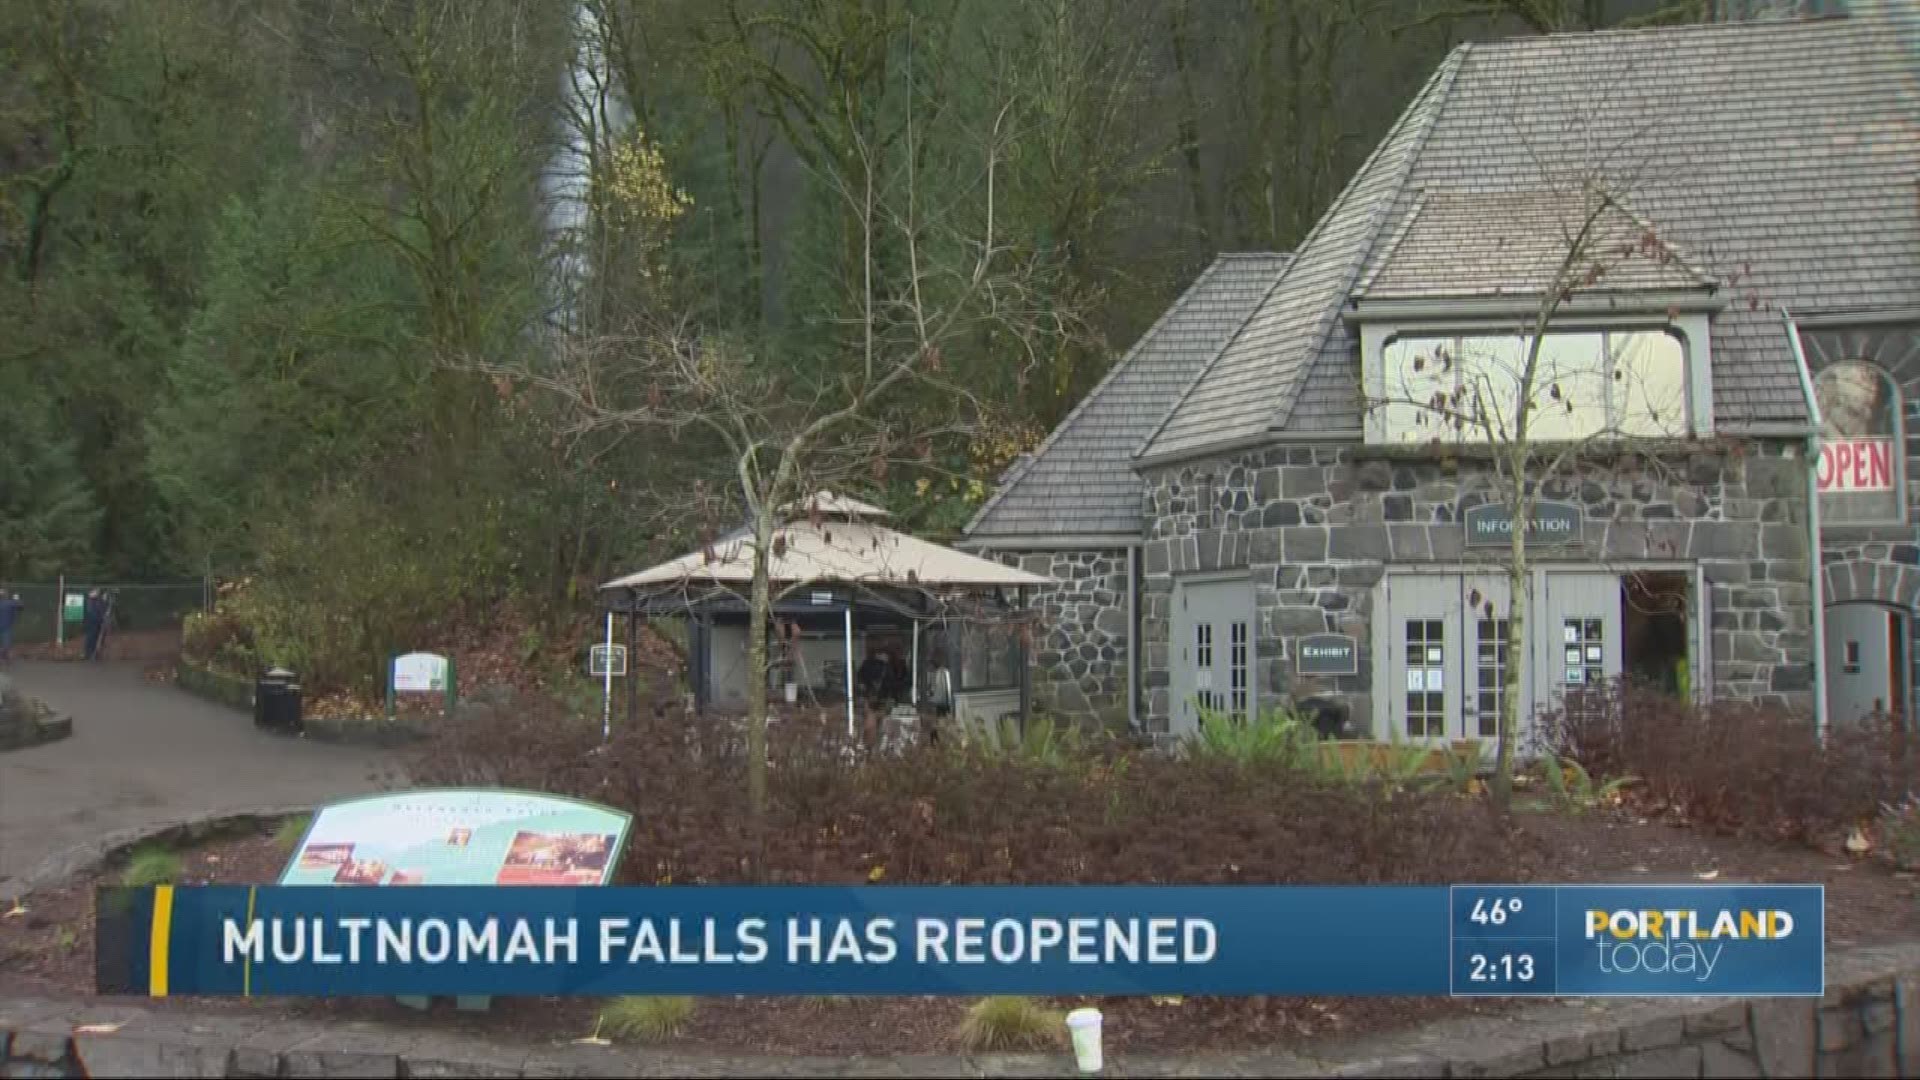 Multnomah Falls has reopened